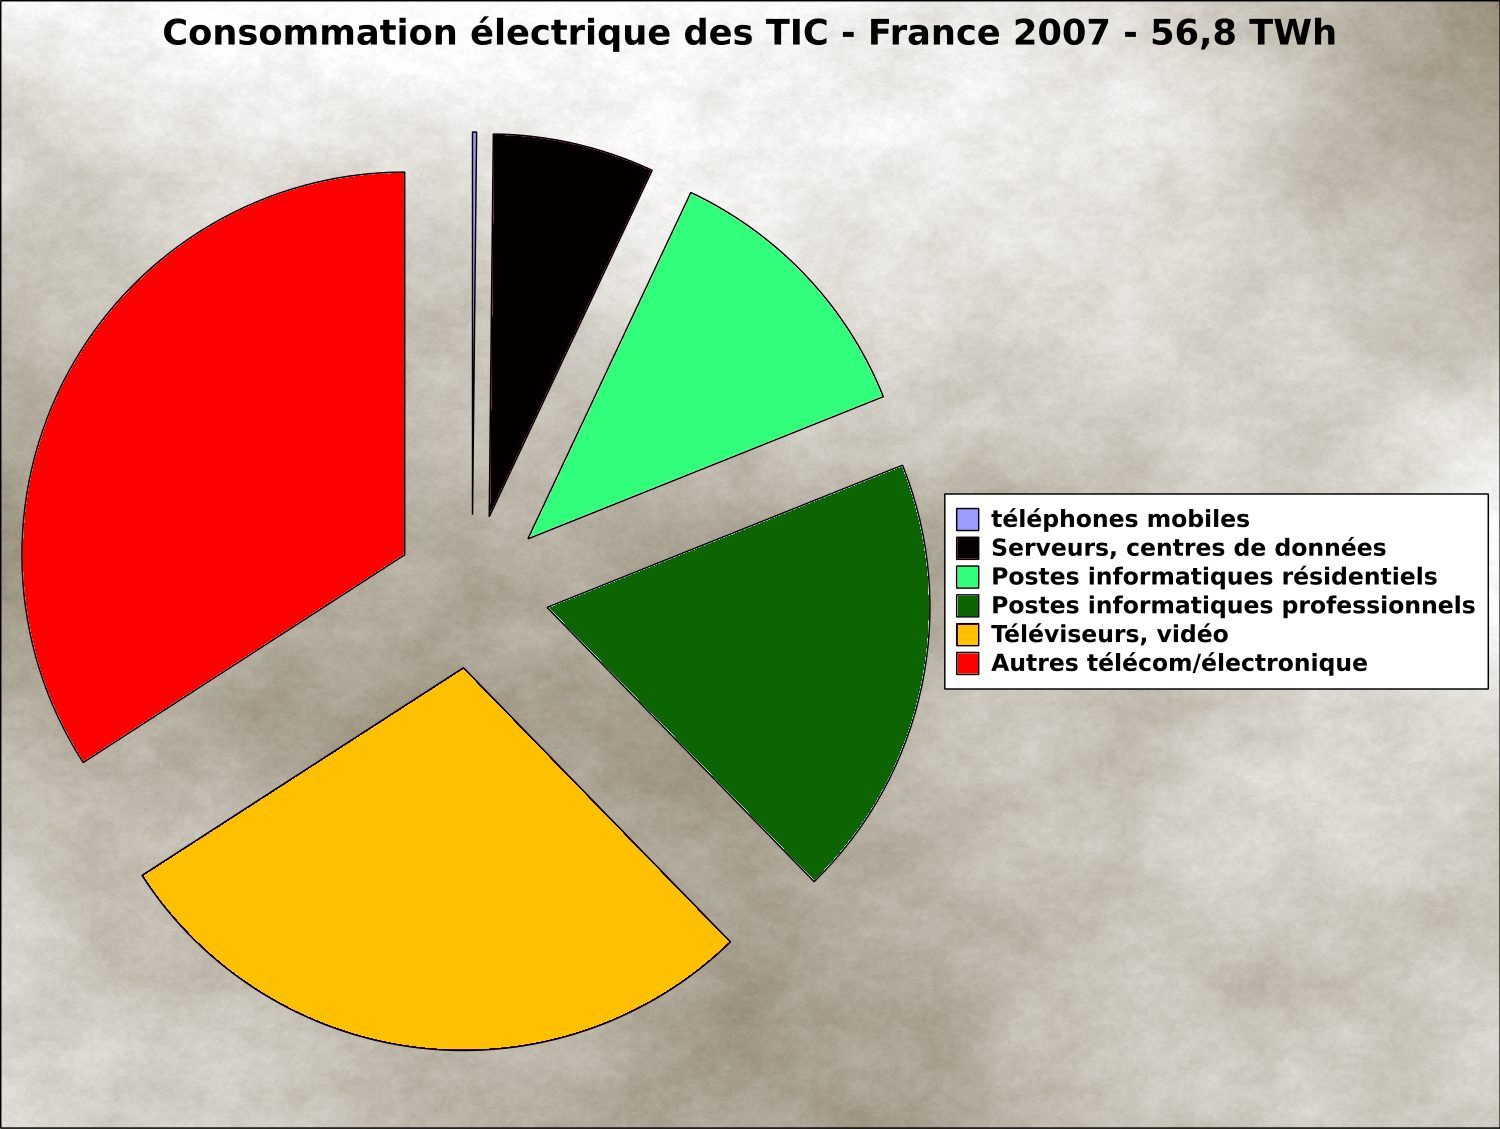 Les centres de données représentent une part assez faible dans l'ensemble de la consommation électrique des TIC (source Ministère du développement durable).